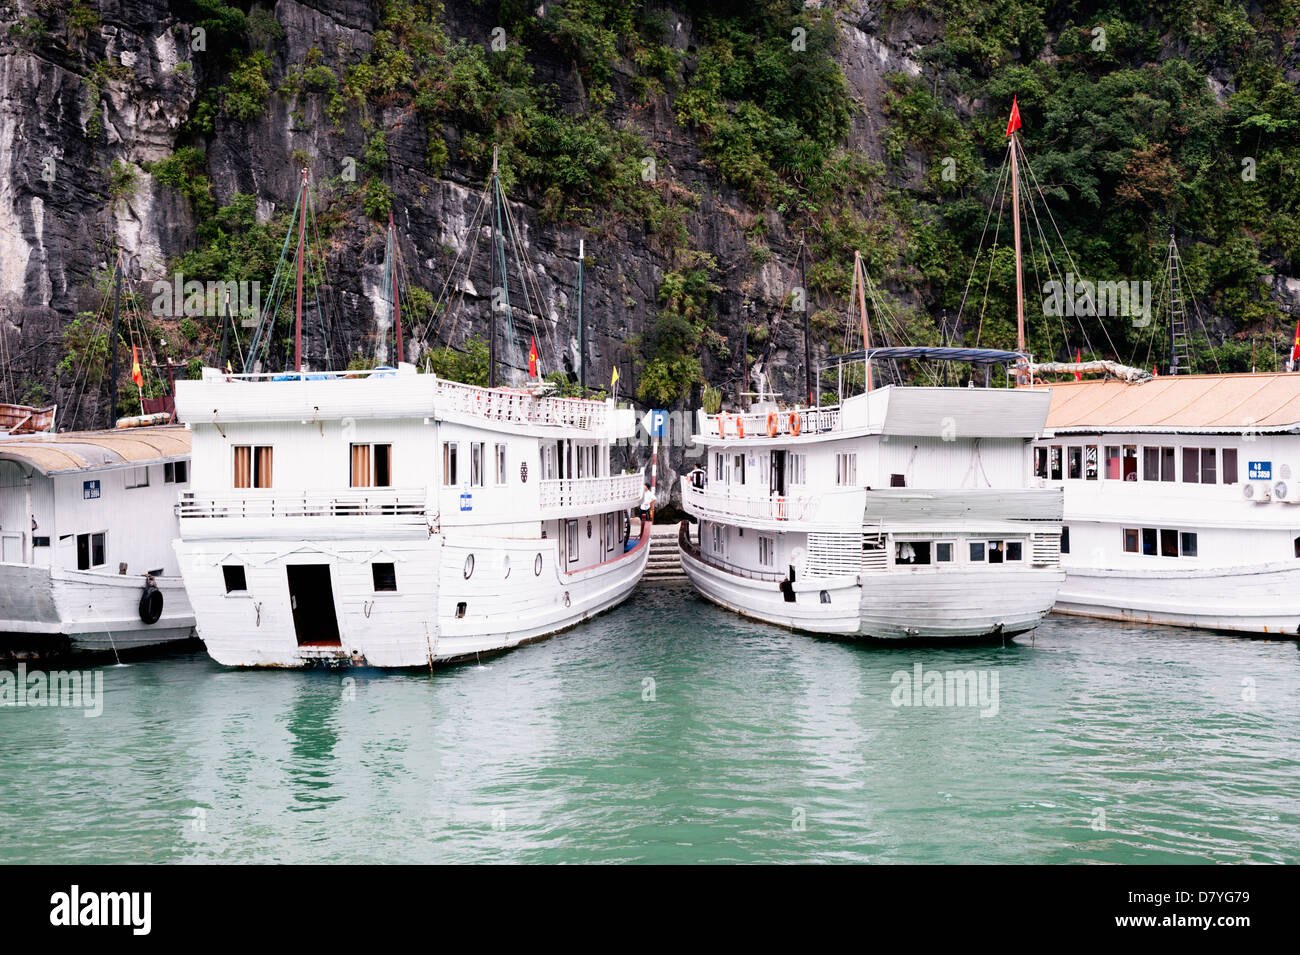 La baie d'Ha Long, Vietnam - bateaux de croisière touristique Banque D'Images